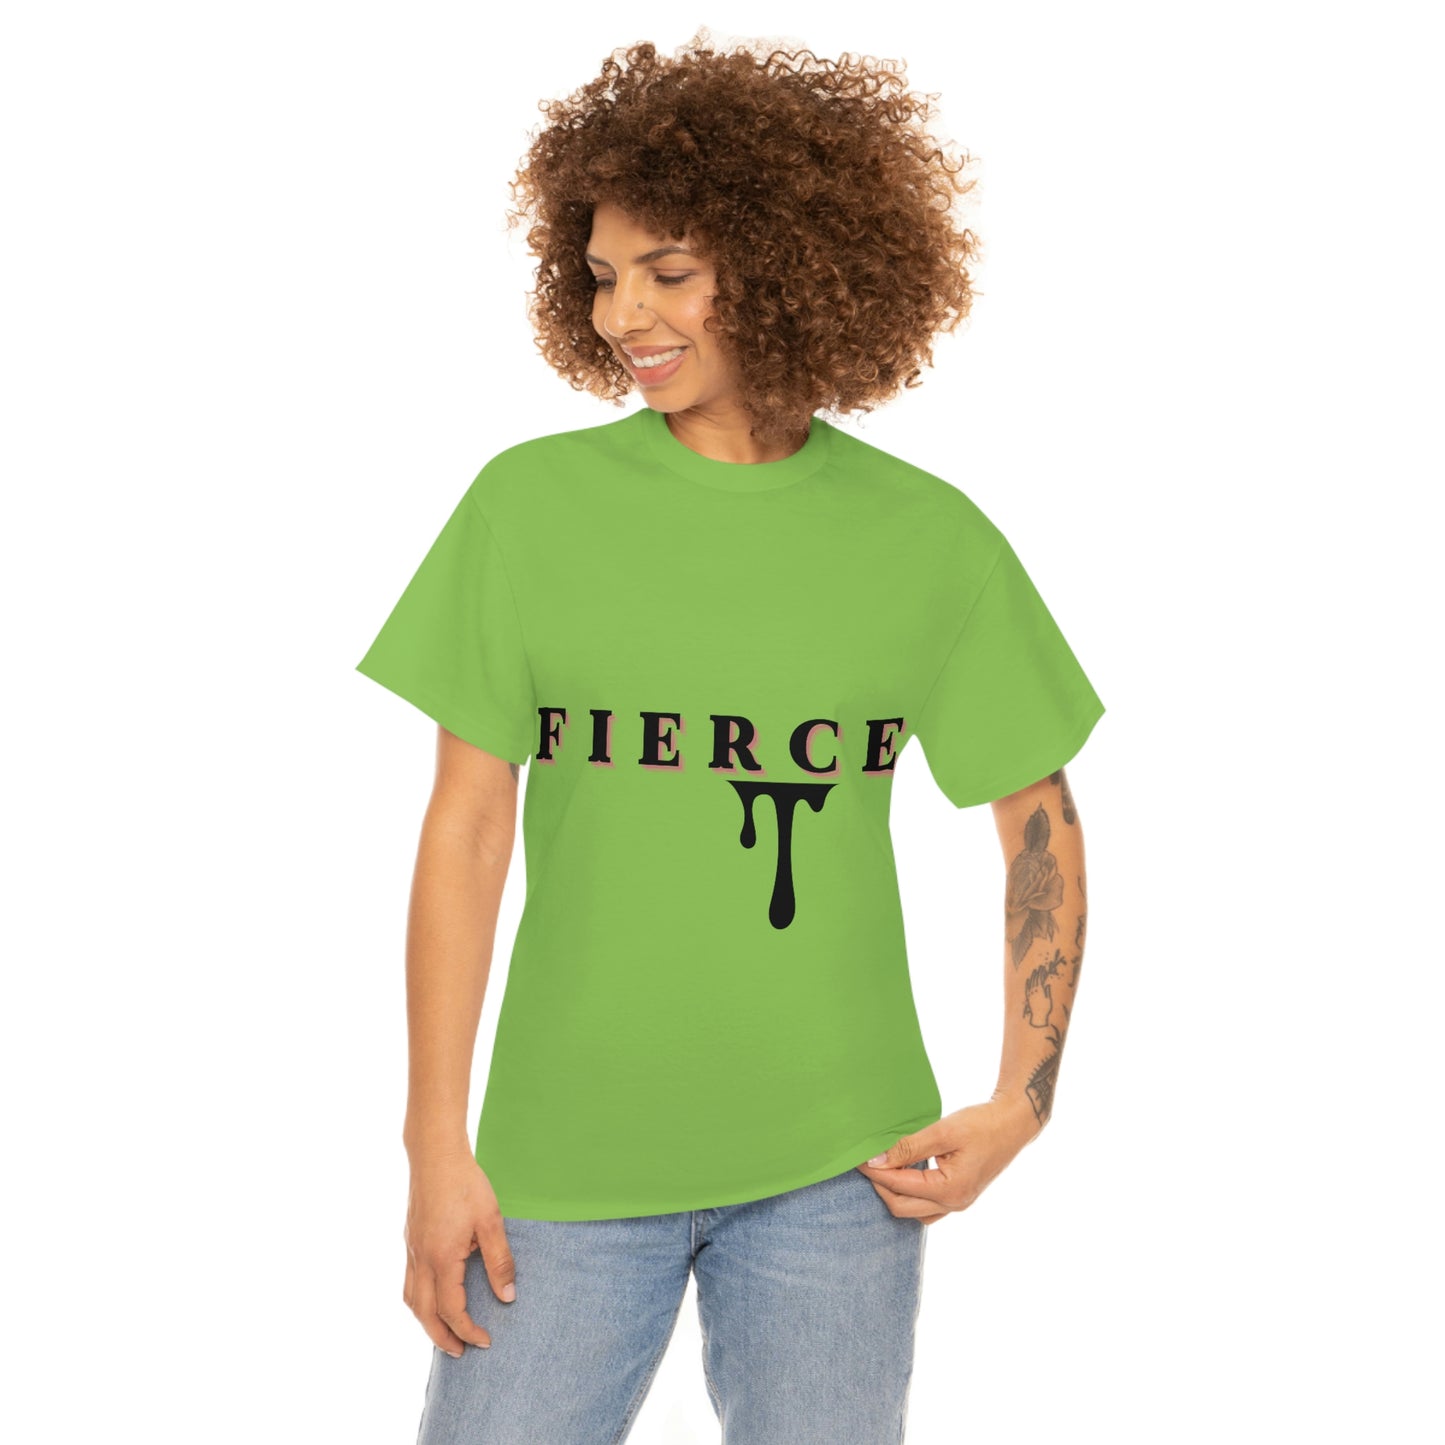 Fierce T-shirt